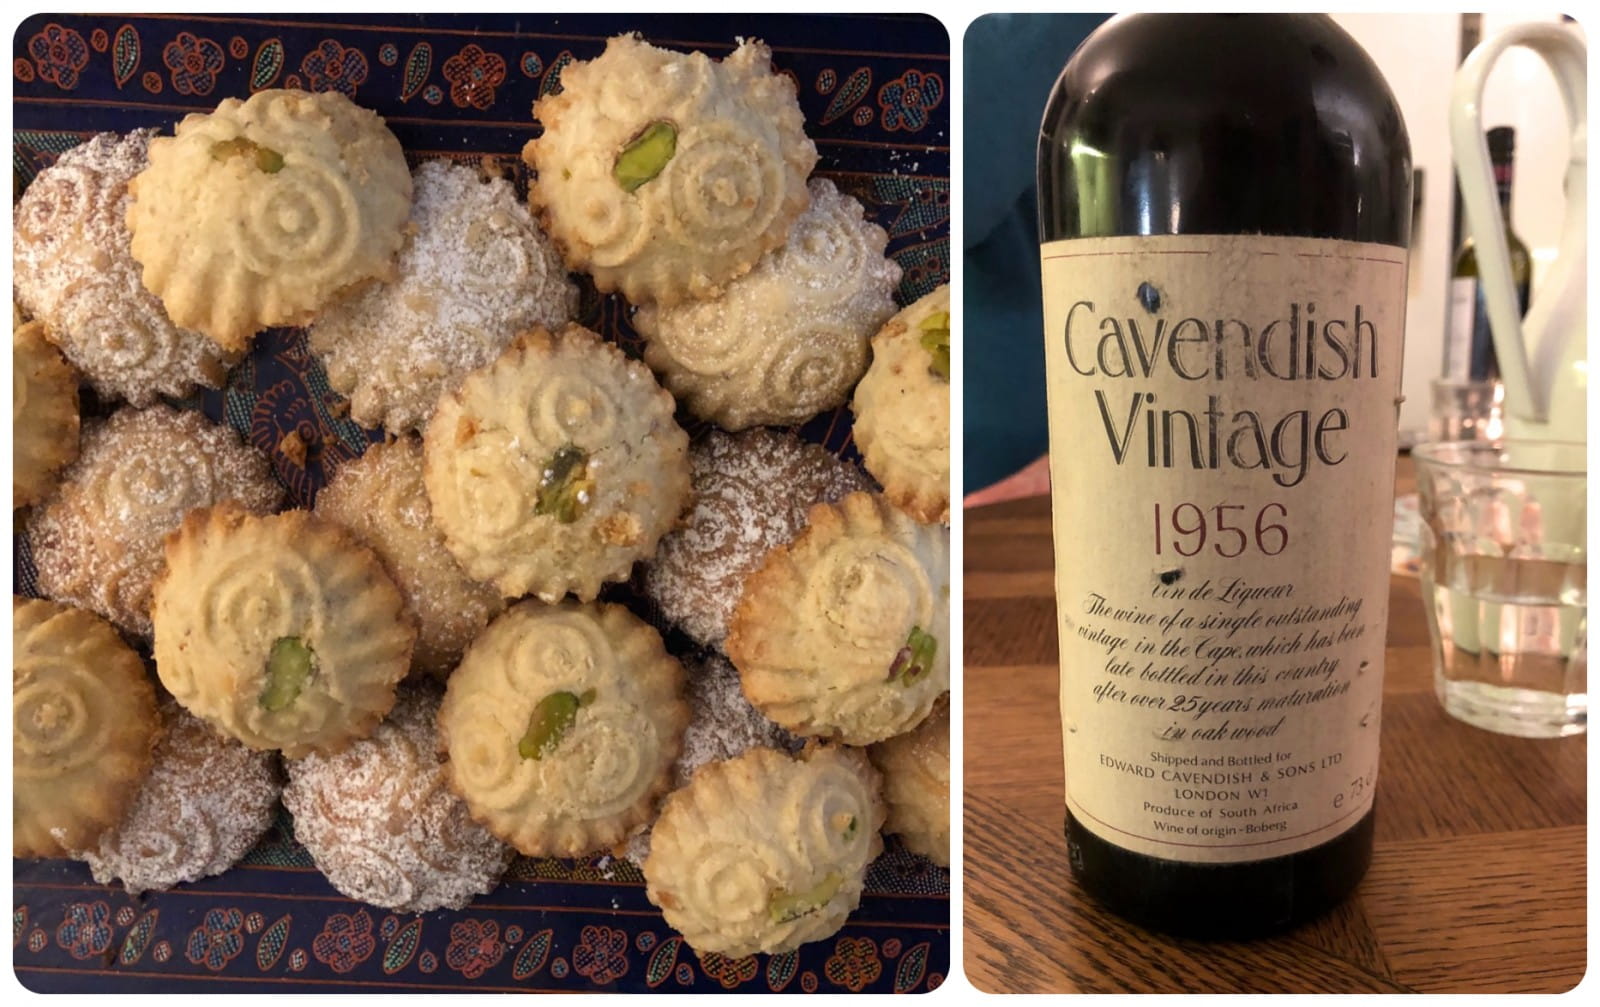  Pistachio and date cookies with Cavendish Vin de Liqueur